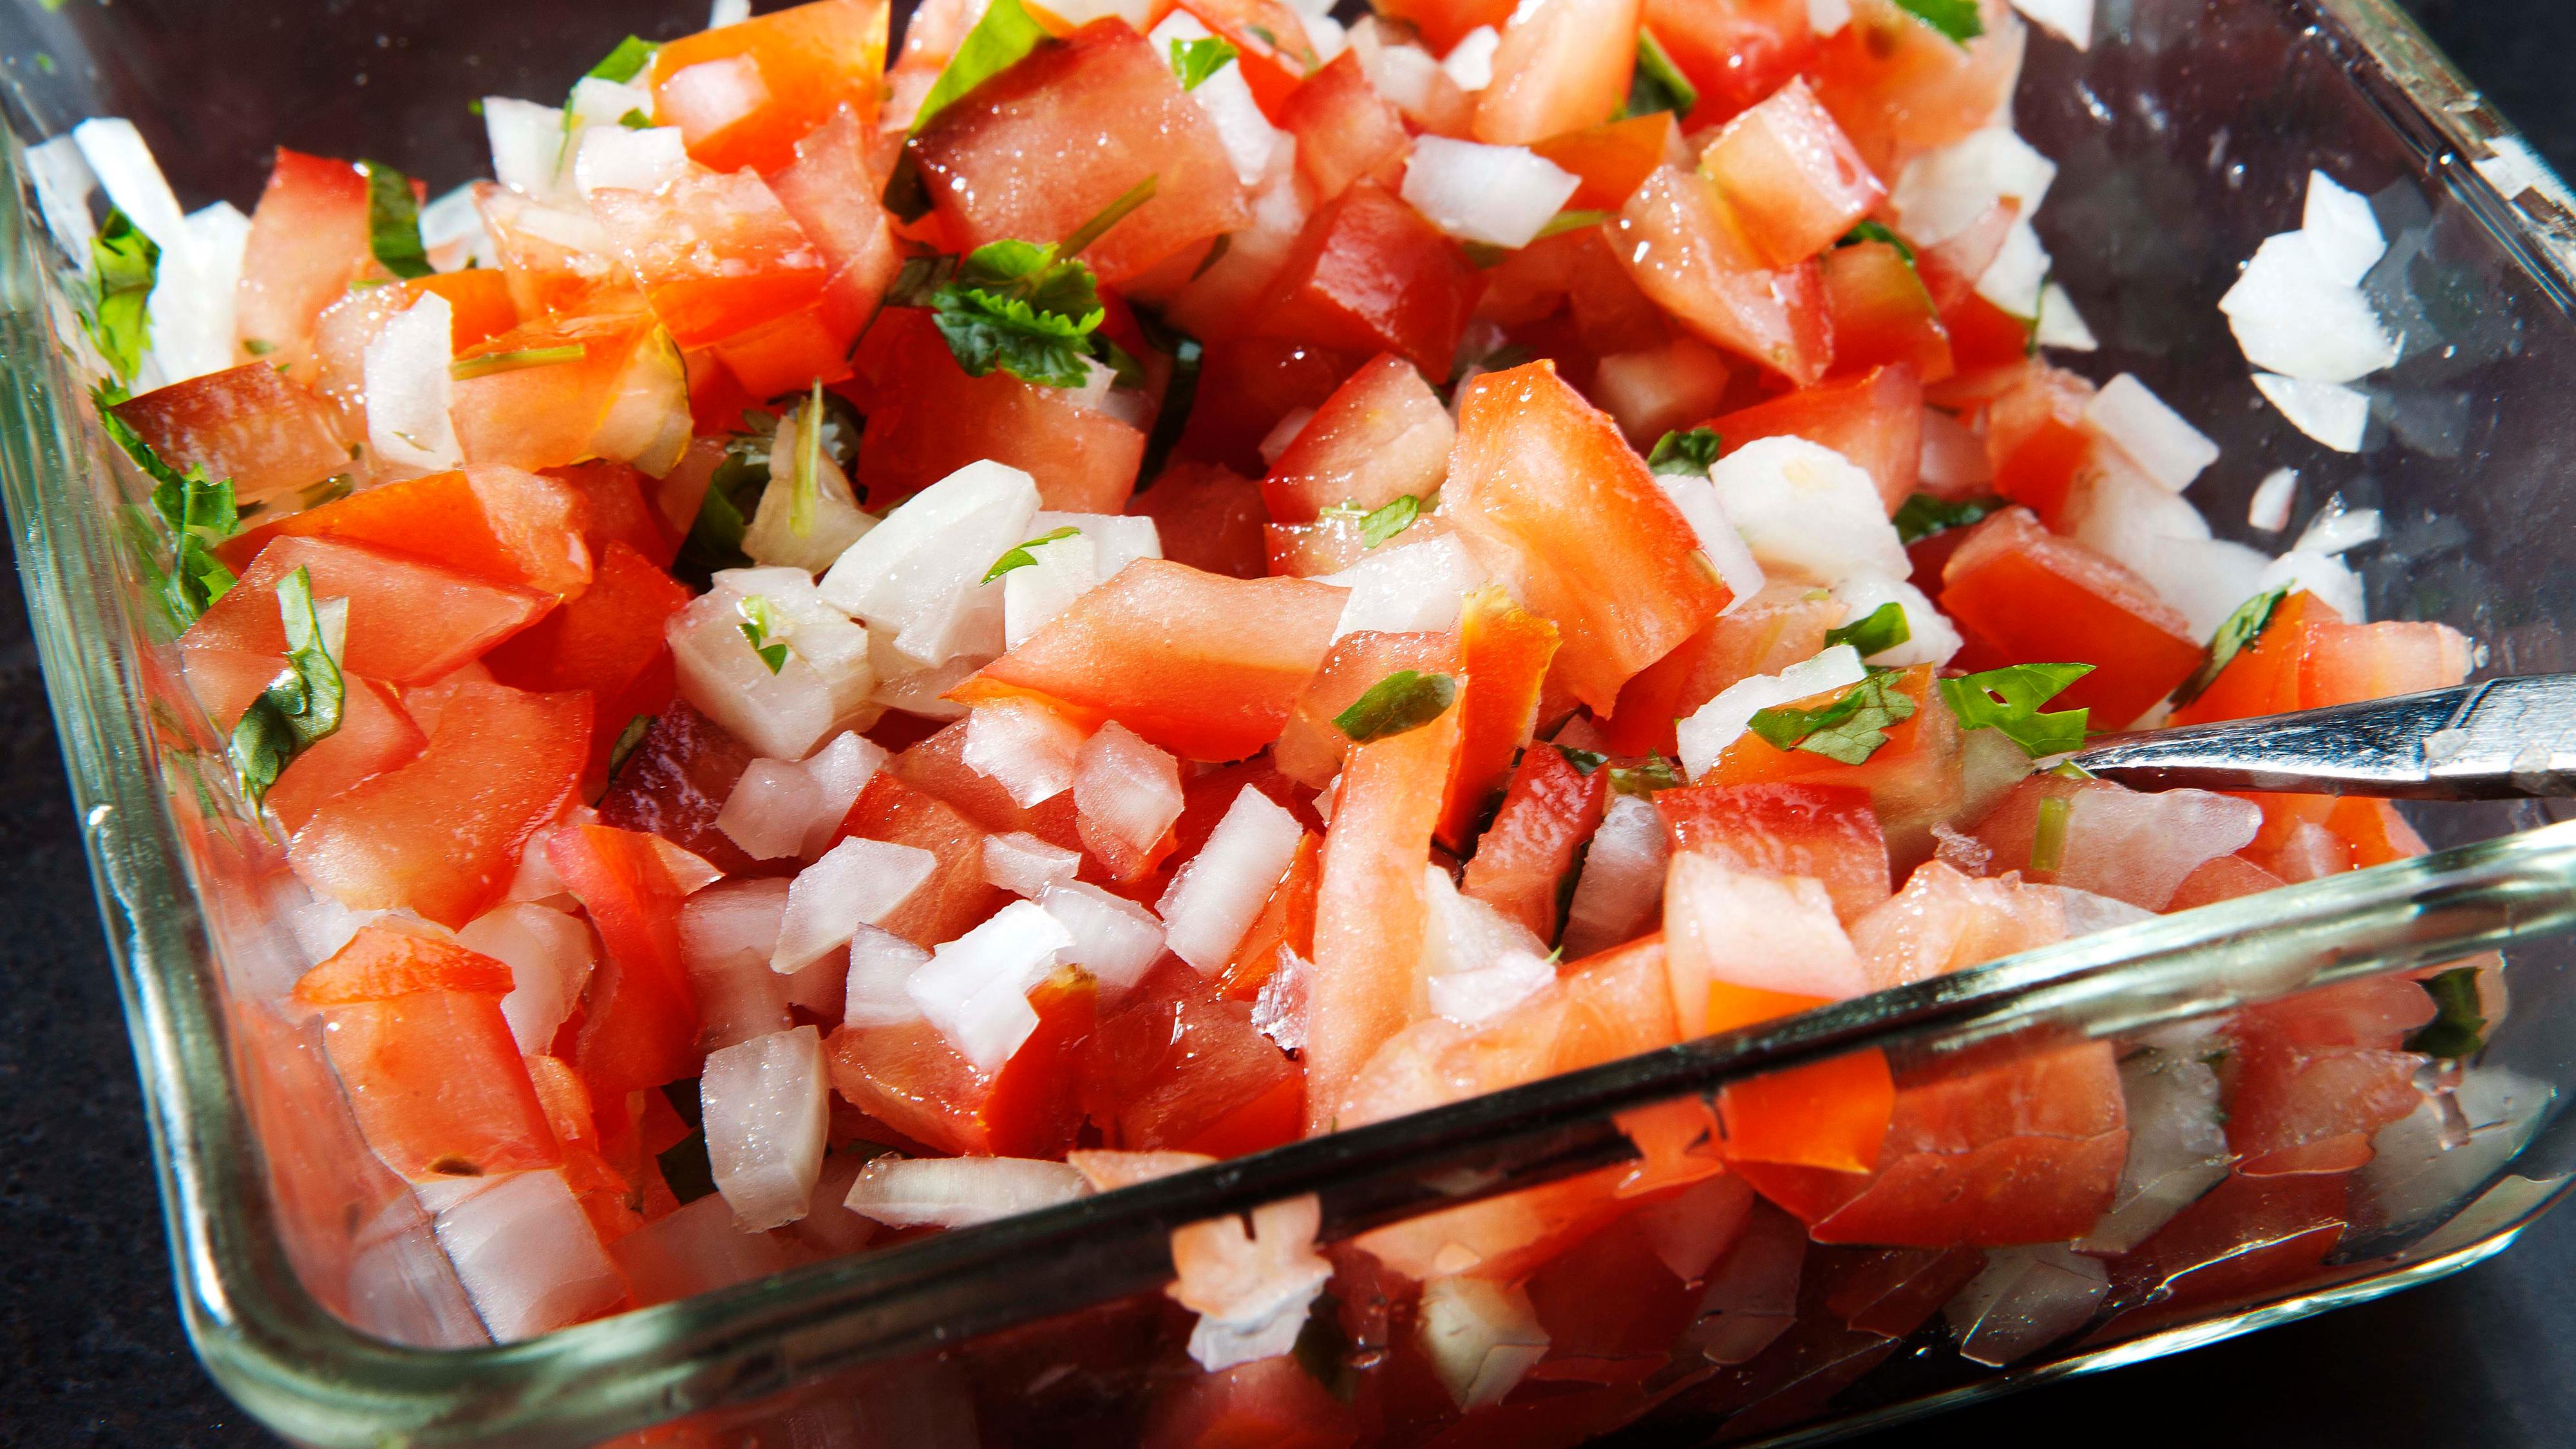 For tomatsalsaen: Del opp tomatene i båter, bruk en skje til å fjerne den bløte tomatkjernen. Skjær tomatkjøttet i små terninger. Del opp løken i tilsvarende terninger og bland sammen med finhakket hvitløk. Ha over limesaft og hakket frisk koriander. Sett kjølig til bruk.